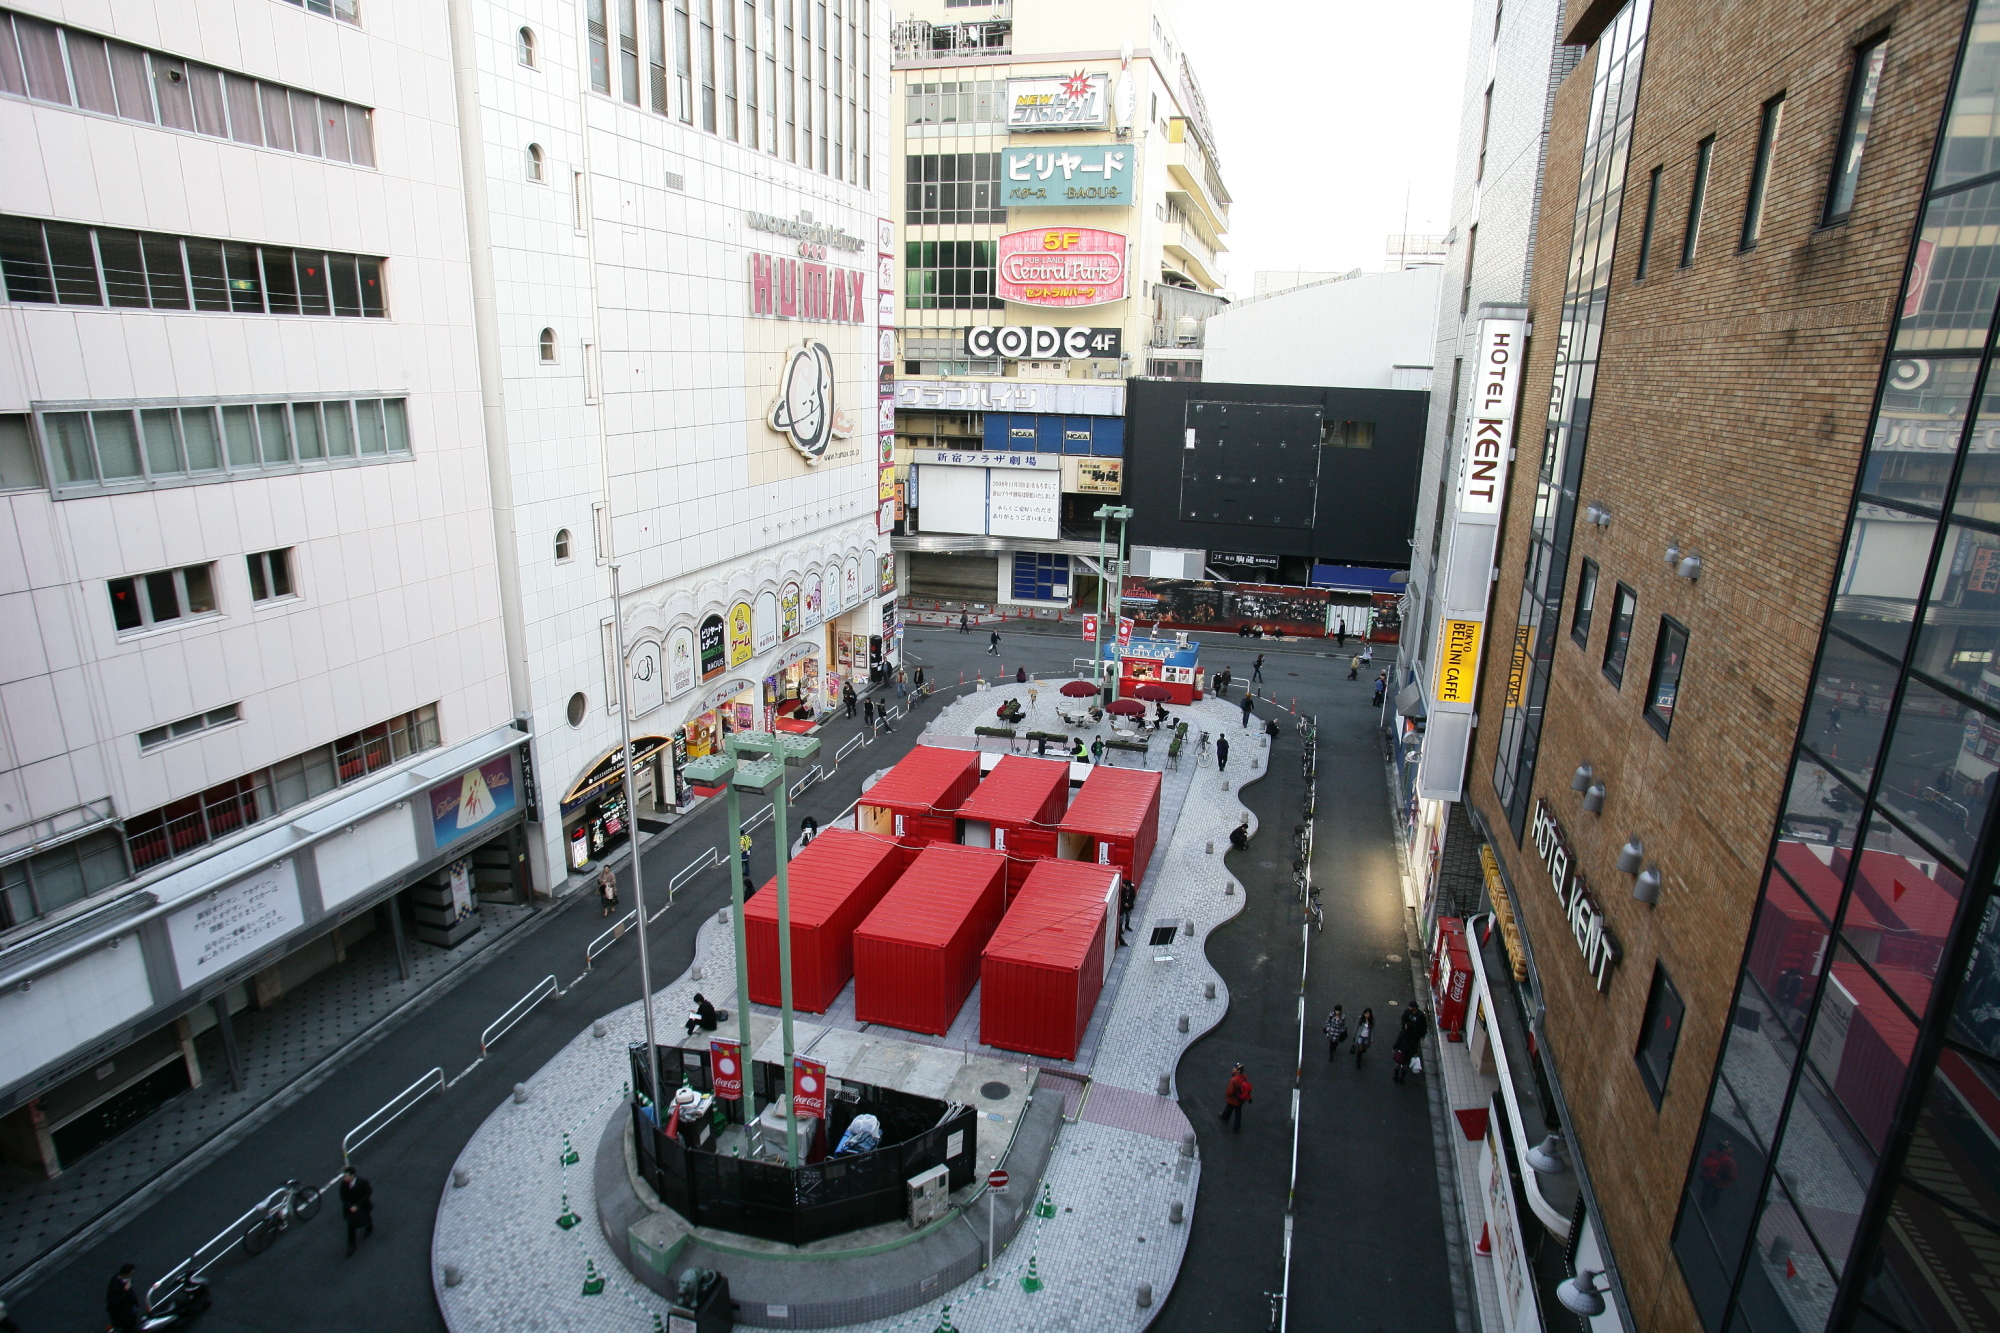 歌舞伎町アートサイト イベント・プレスリリース